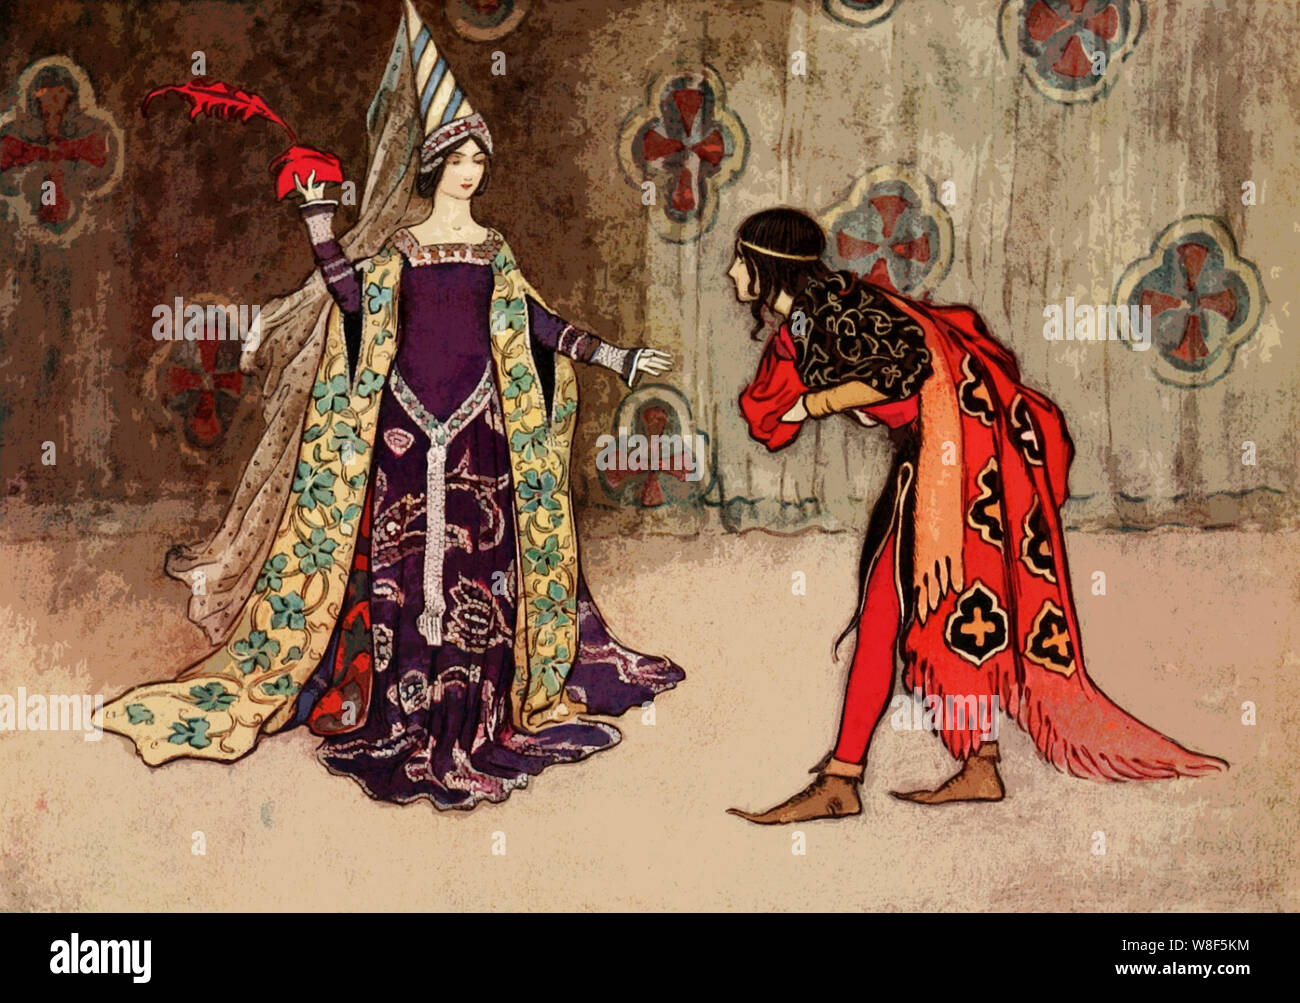 Romance Medieval Imagens – Download Grátis no Freepik